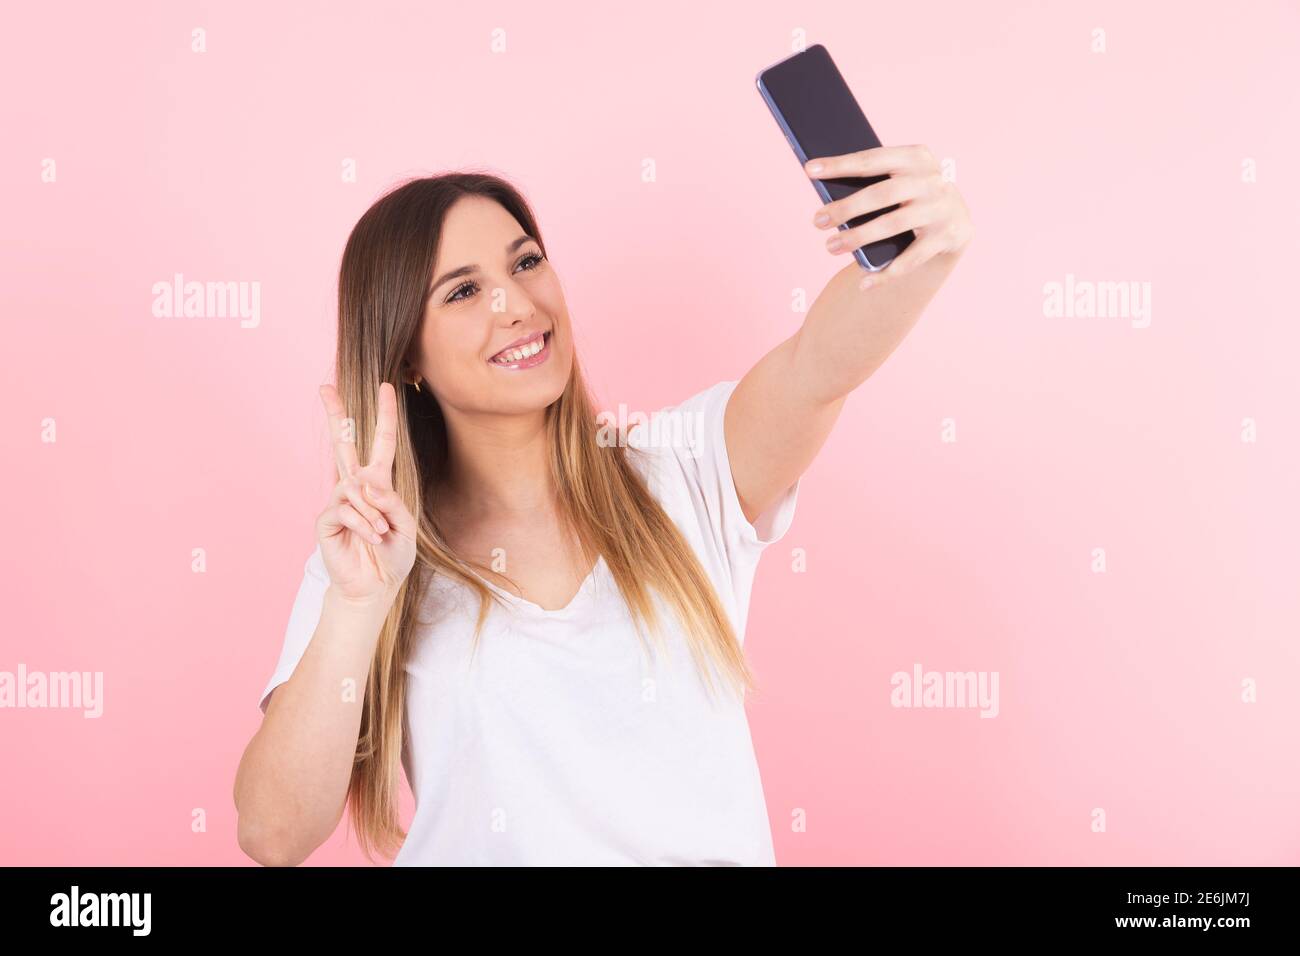 Eine junge blonde Frau macht ein Selfie mit ihrem Handy Telefon macht eine Siegesgeste Stockfoto